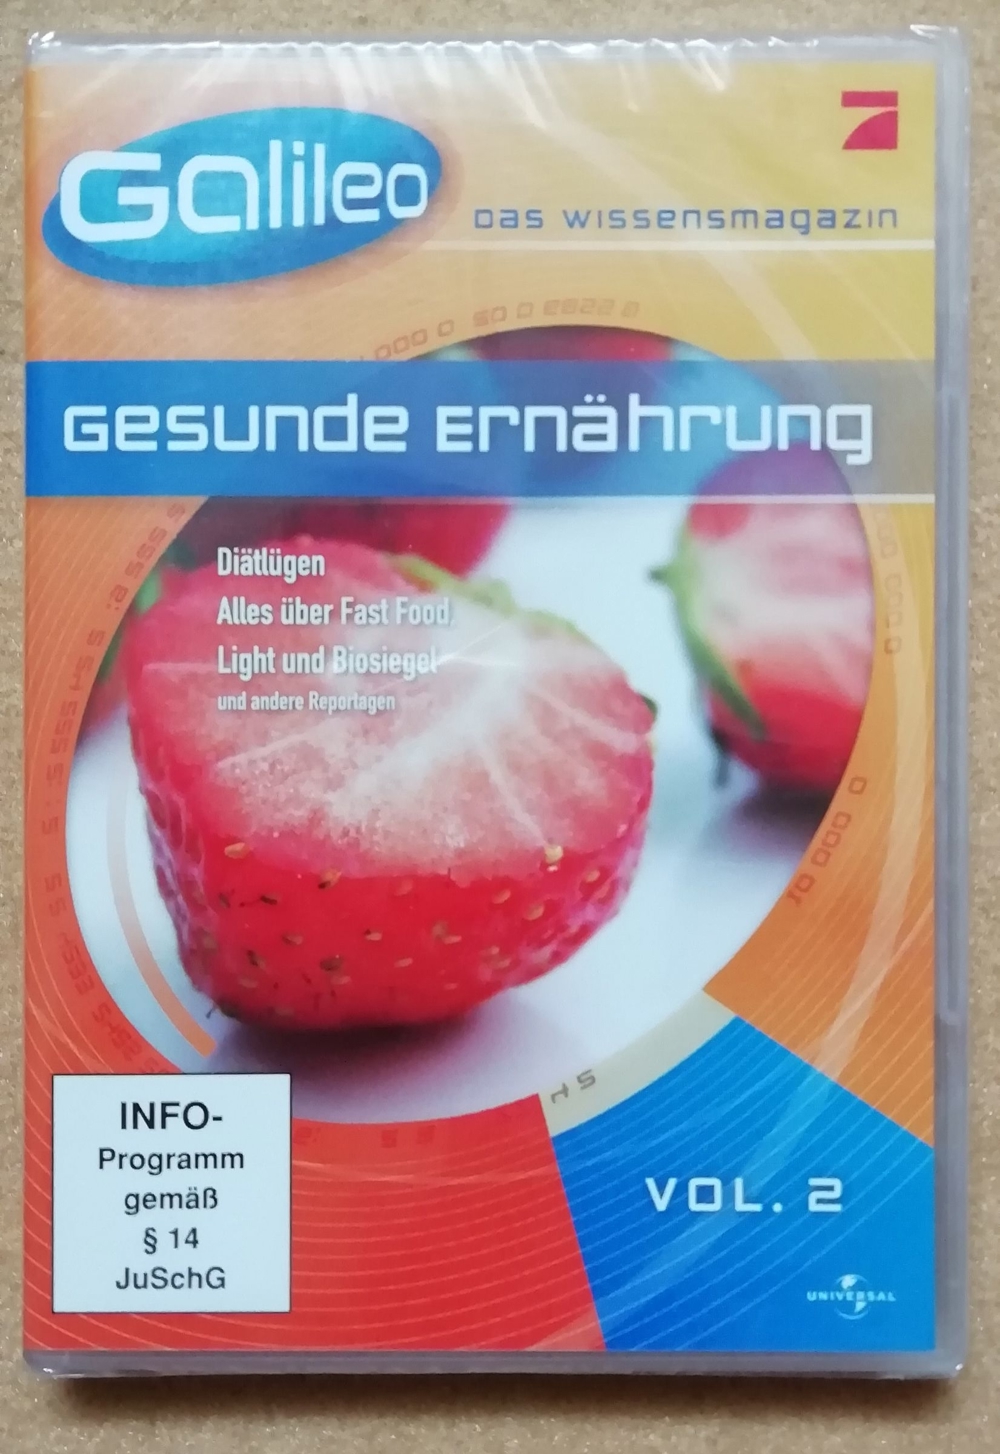 DVD: GALILEO - Das Wissensmagazin - Gesunde Ernährung, Vol. 2; originalverpackt, neu und unbenutzt